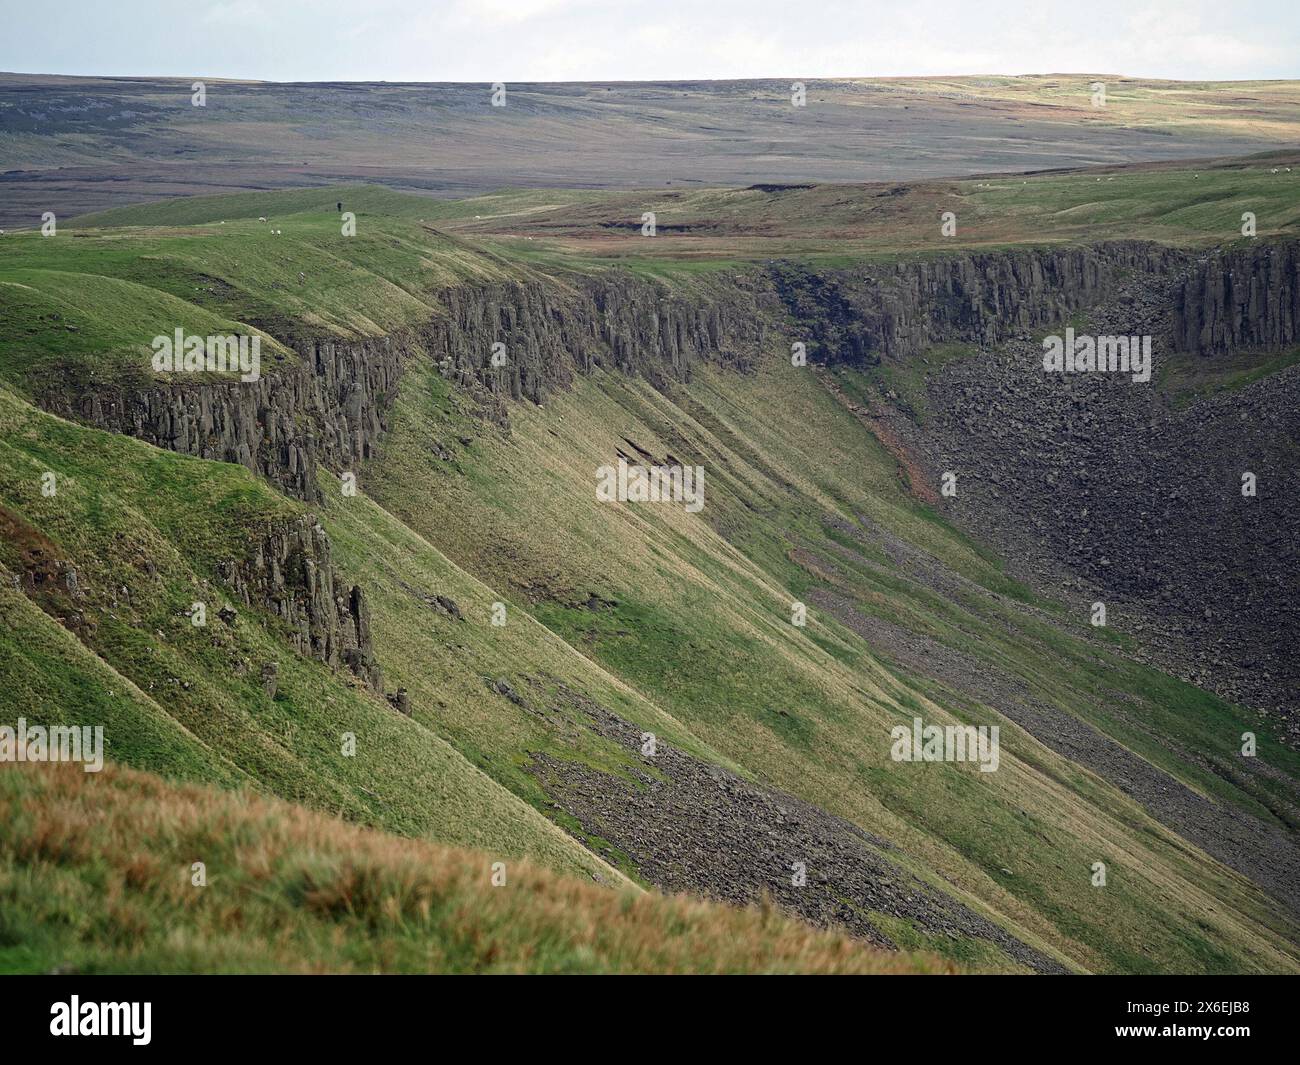 Vista della spettacolare valle glaciale geologica dai lati ripidi dell'High Cup Nick con pareti rocciose verticali dei Pennines settentrionali, Cumbria, Inghilterra, Regno Unito Foto Stock